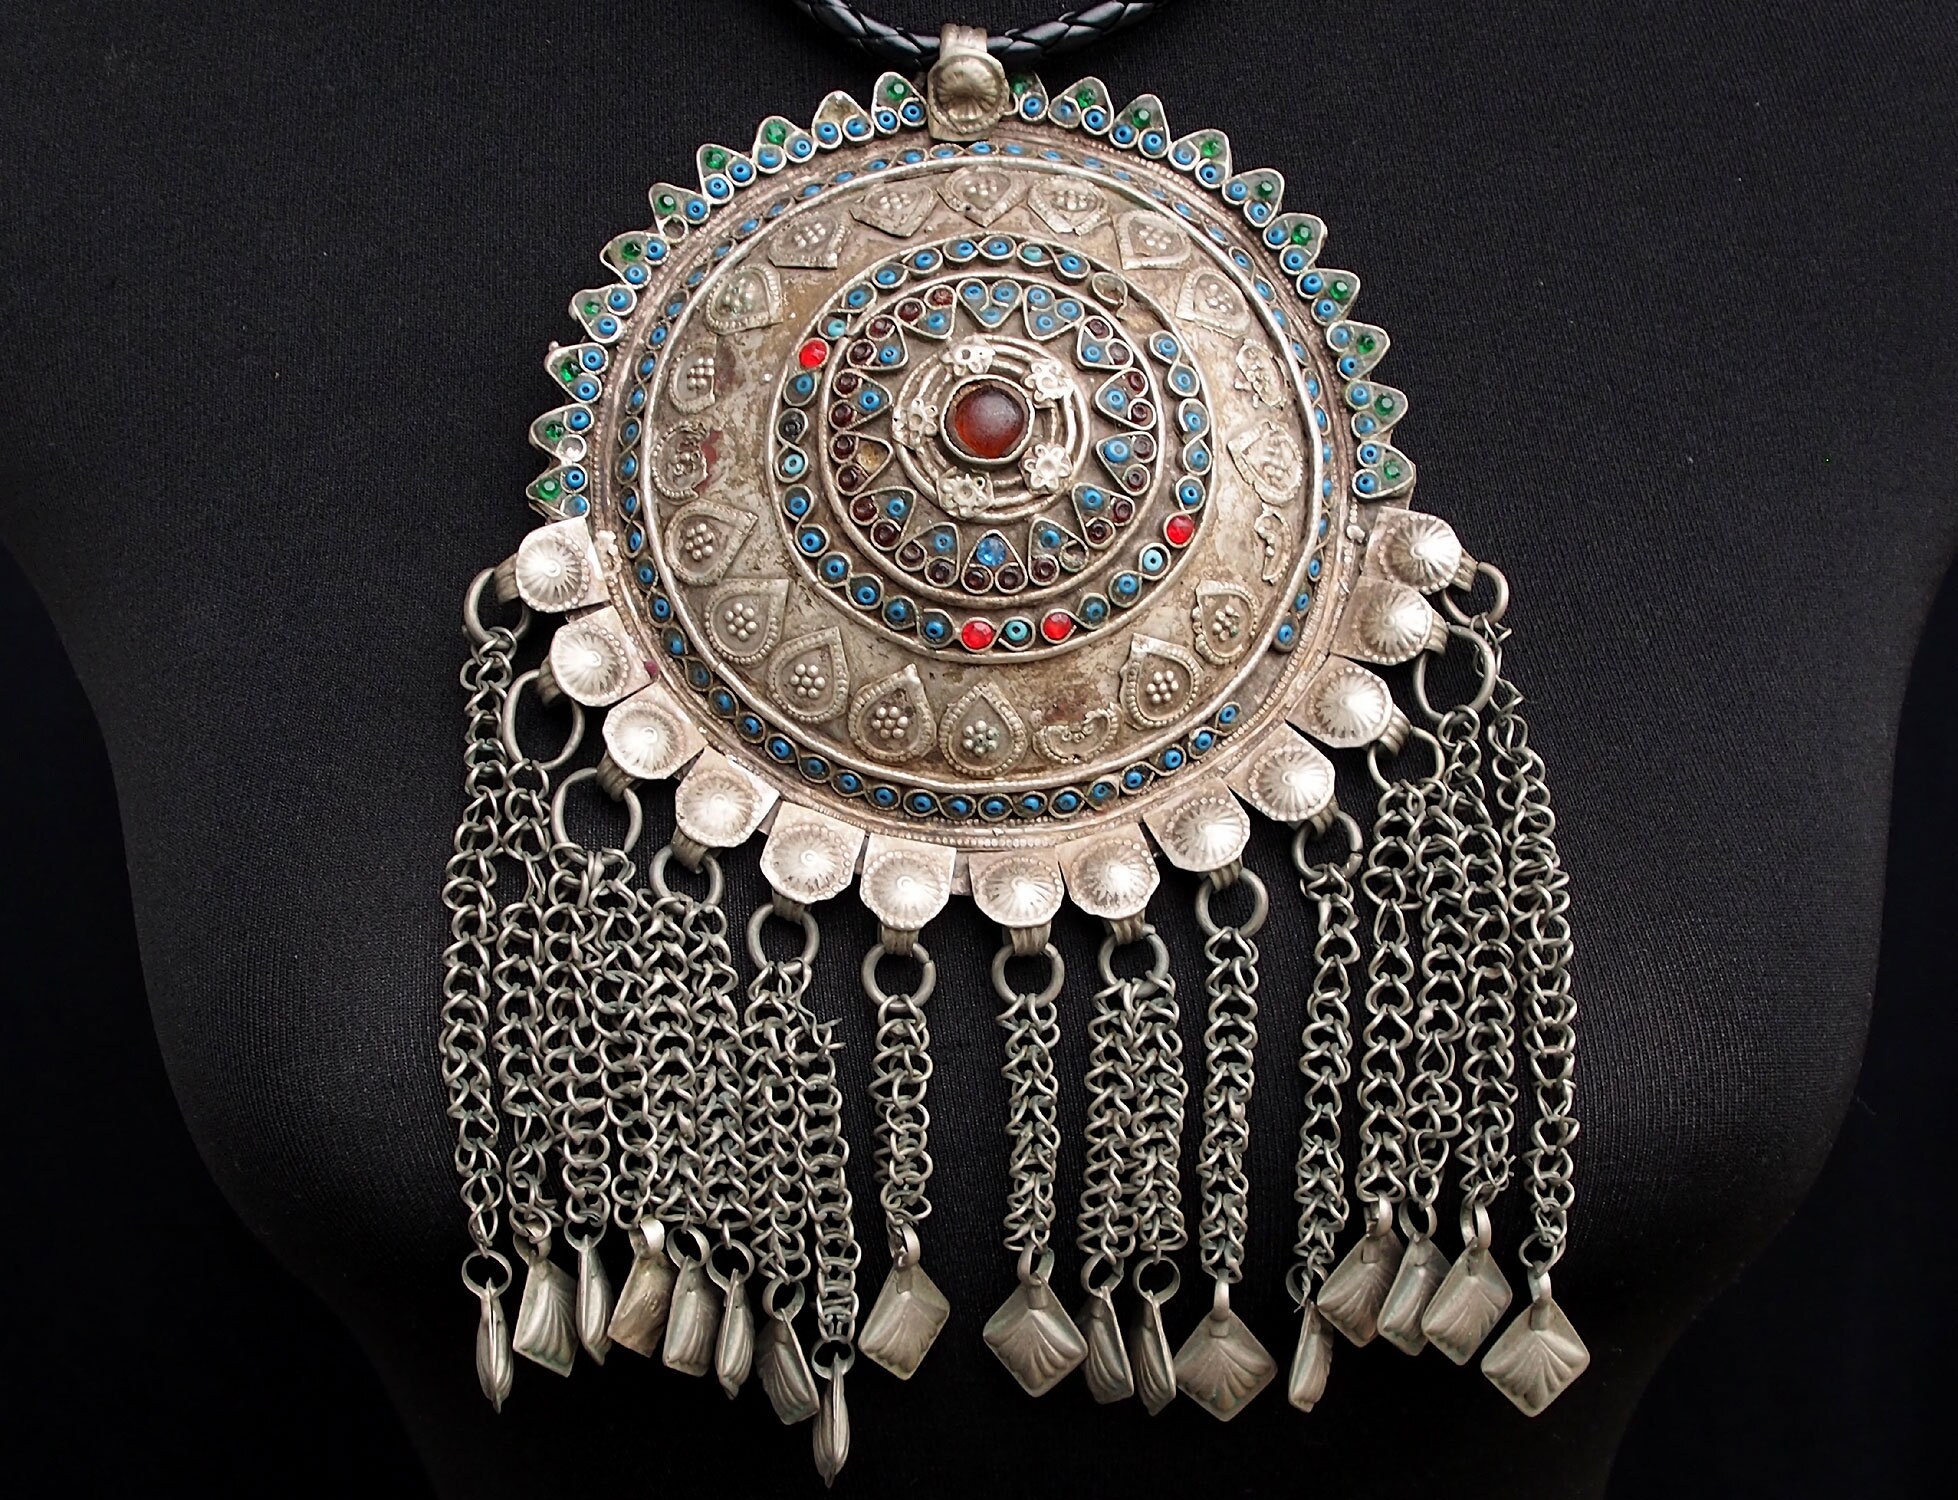 Antike Nomaden Silber Halsmomente Kette mit Amuletten Anhänger